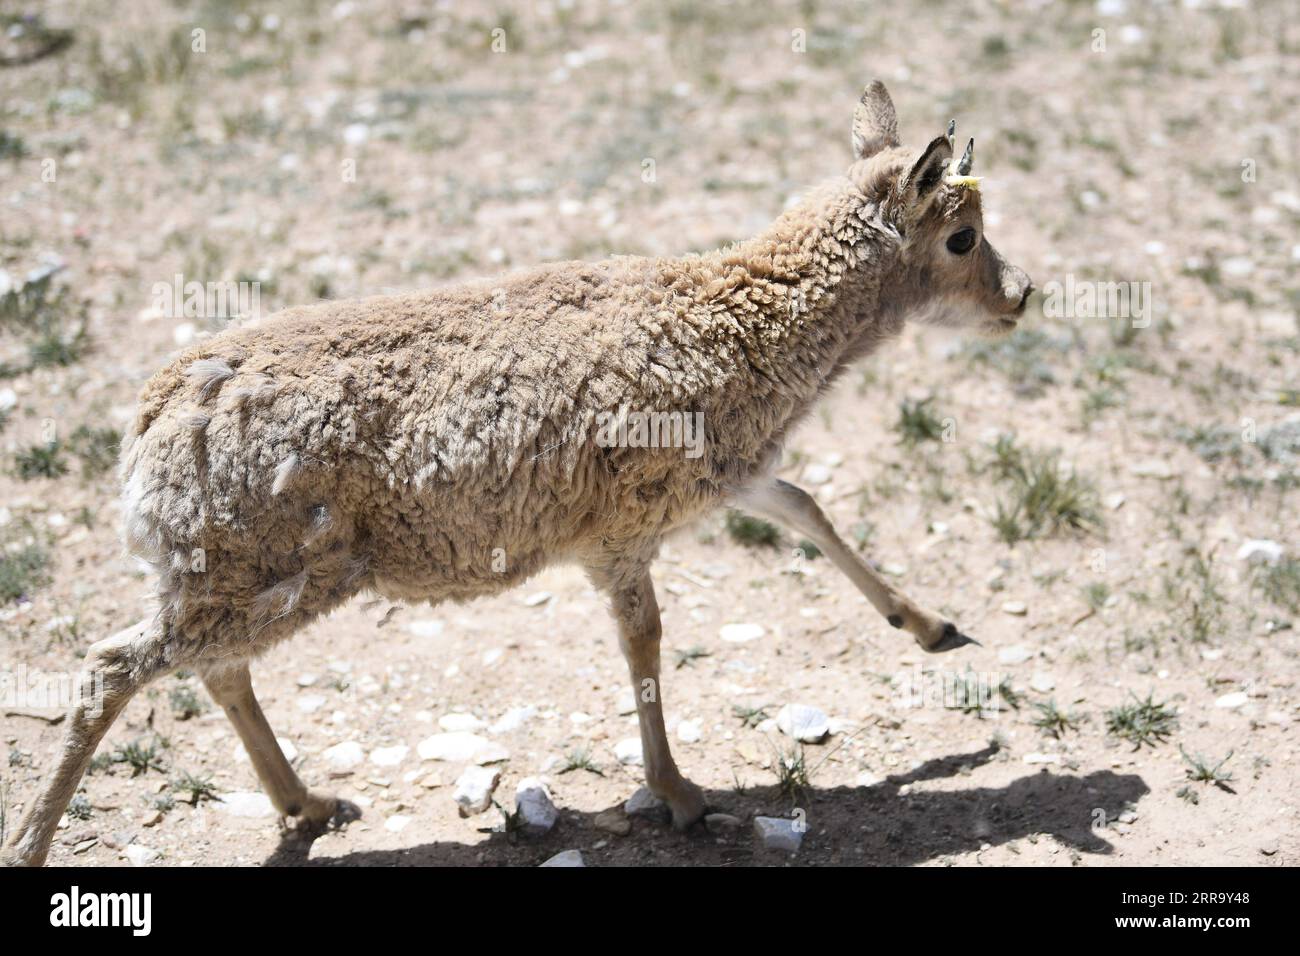 210707 -- Hoh XIL, 7 juillet 2021 -- Une antilope tibétaine est relâchée dans la nature dans un centre de sauvetage de la faune sauvage de la station de protection Sonam Dargye à Hoh XIL, dans le nord-ouest de la province de Qinghai, le 7 juillet 2021. Cinq antilopes tibétaines ont été relâchées dans la nature mercredi après avoir été sauvées dans la réserve naturelle nationale Hoh XIL du nord-ouest de la Chine, dans le cadre du parc national Sanjiangyuan, a déclaré le bureau de gestion du parc. Deux antilopes tibétaines femelles et trois antilopes tibétaines mâles ont été relâchées dans la nature vers 1:00 heures mercredi après des années de soins dans un poste de protection local. Antilopes tibétaines Banque D'Images